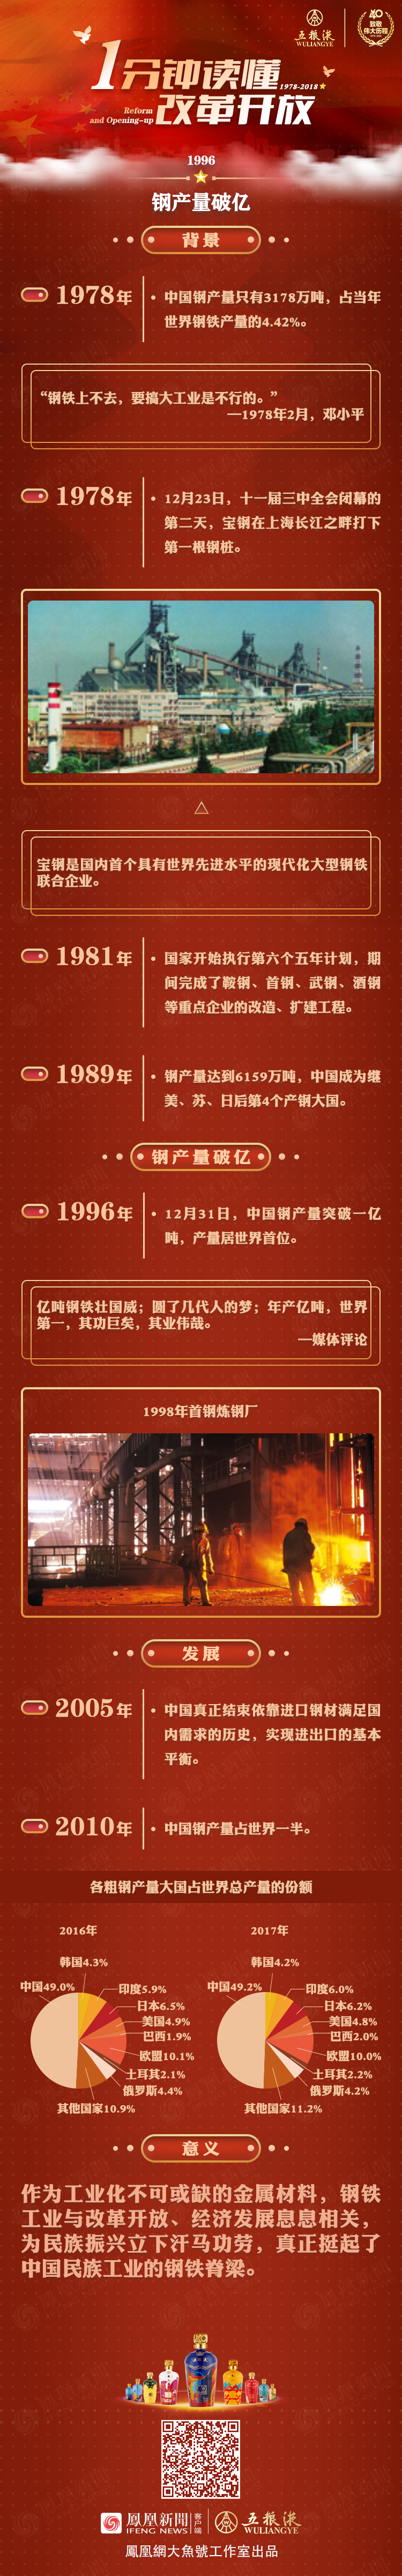 1996年，挺起中国的钢铁脊梁